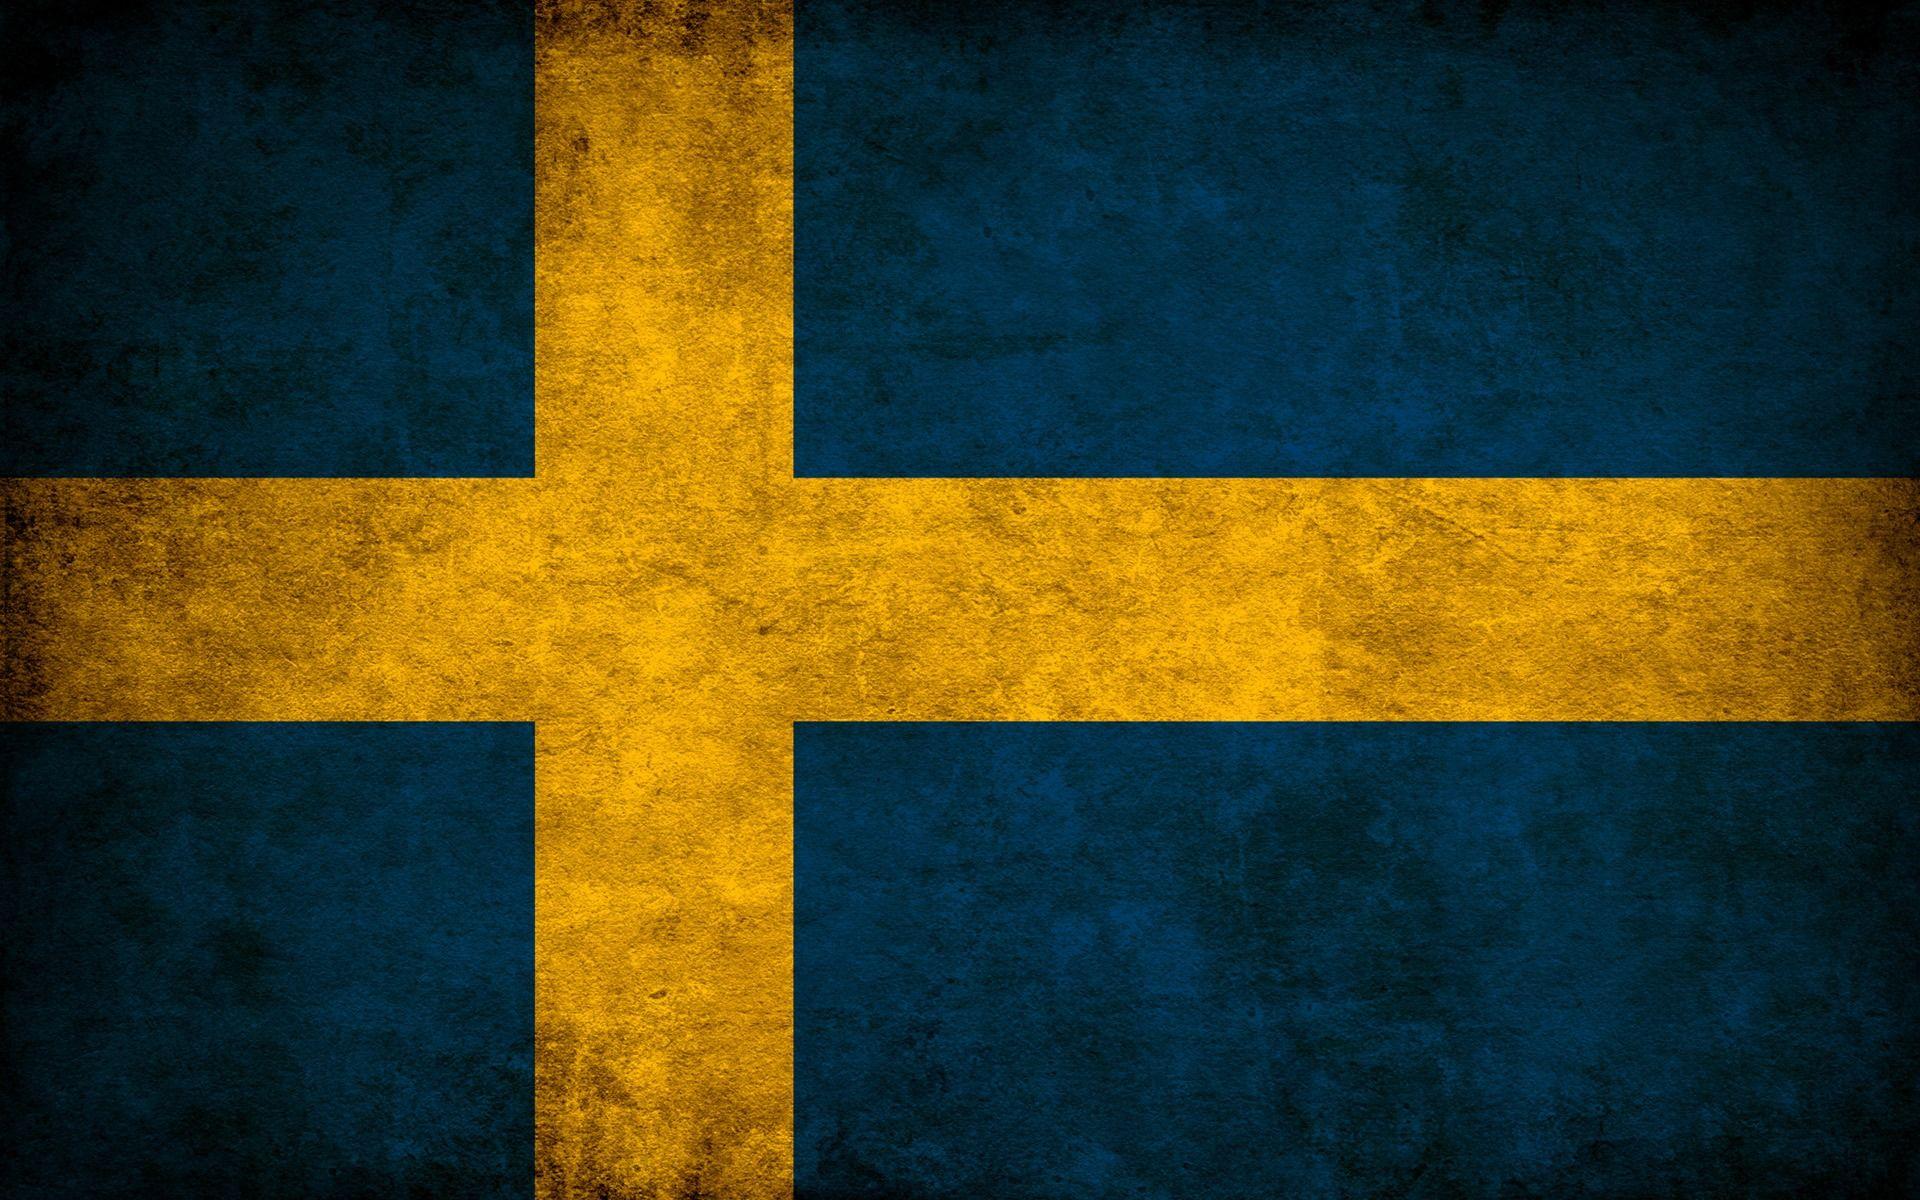 1920x1200 Hình nền cờ Thụy Điển Hình nền thế giới Thụy Điển ở định dạng jpg